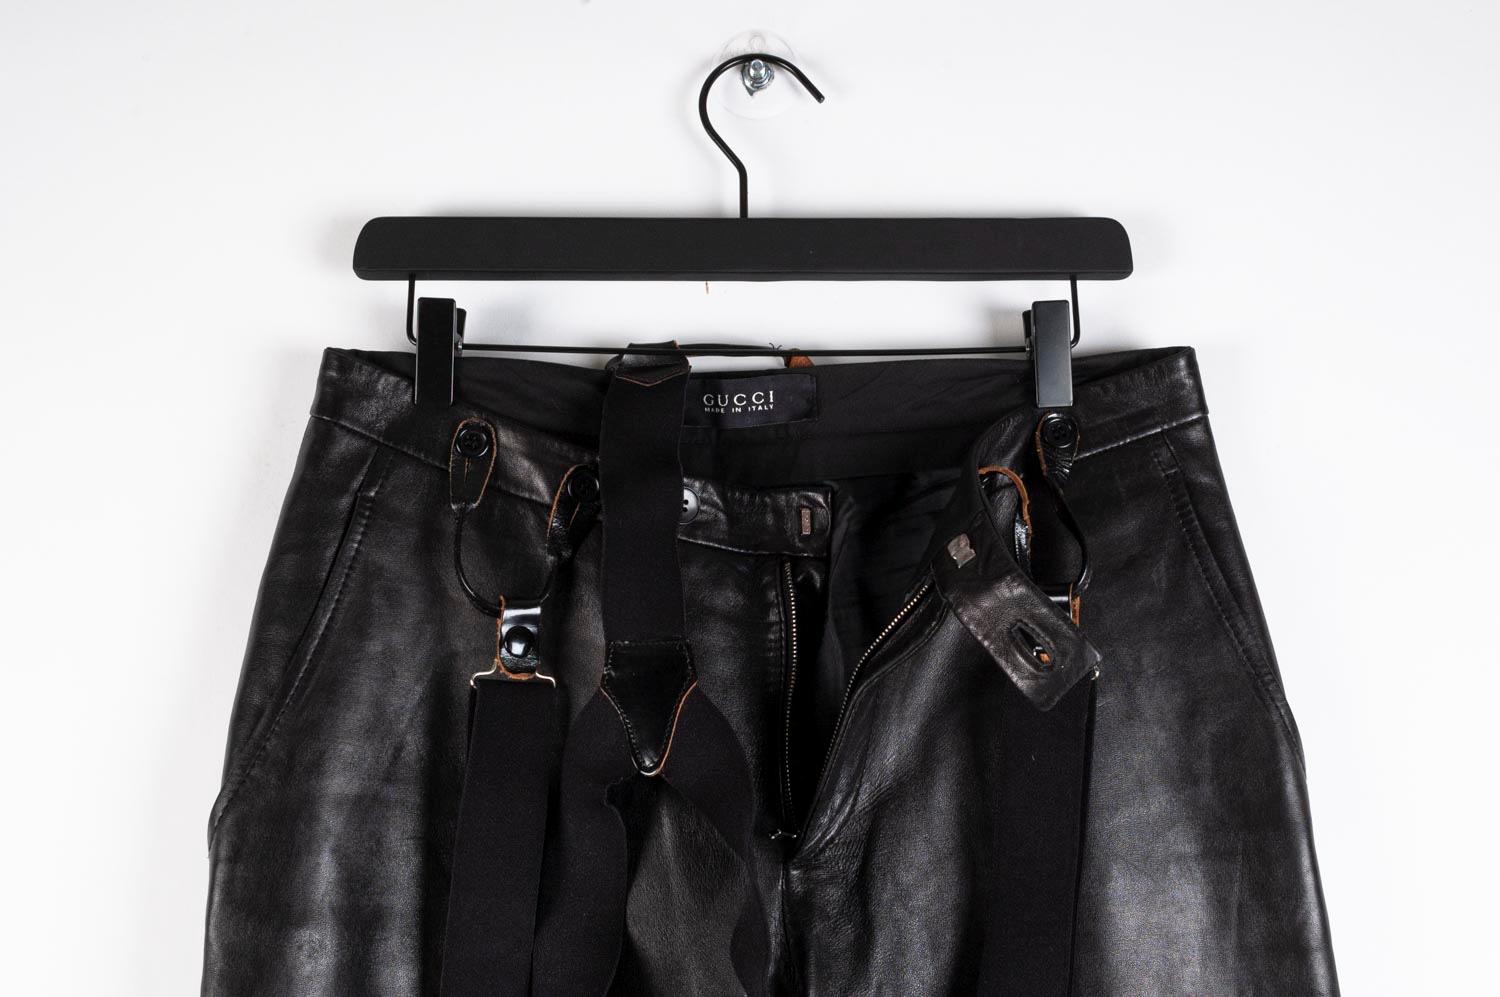 Zum Verkauf steht eine 100% echte Gucci Lederhose für Männer (ich verkaufe sie mit Hosenträgern, nicht Gucci)
Farbe: Schwarz
(Eine tatsächliche Farbe kann ein wenig variieren aufgrund individueller Computer-Bildschirm Interpretation)
MATERIAL: